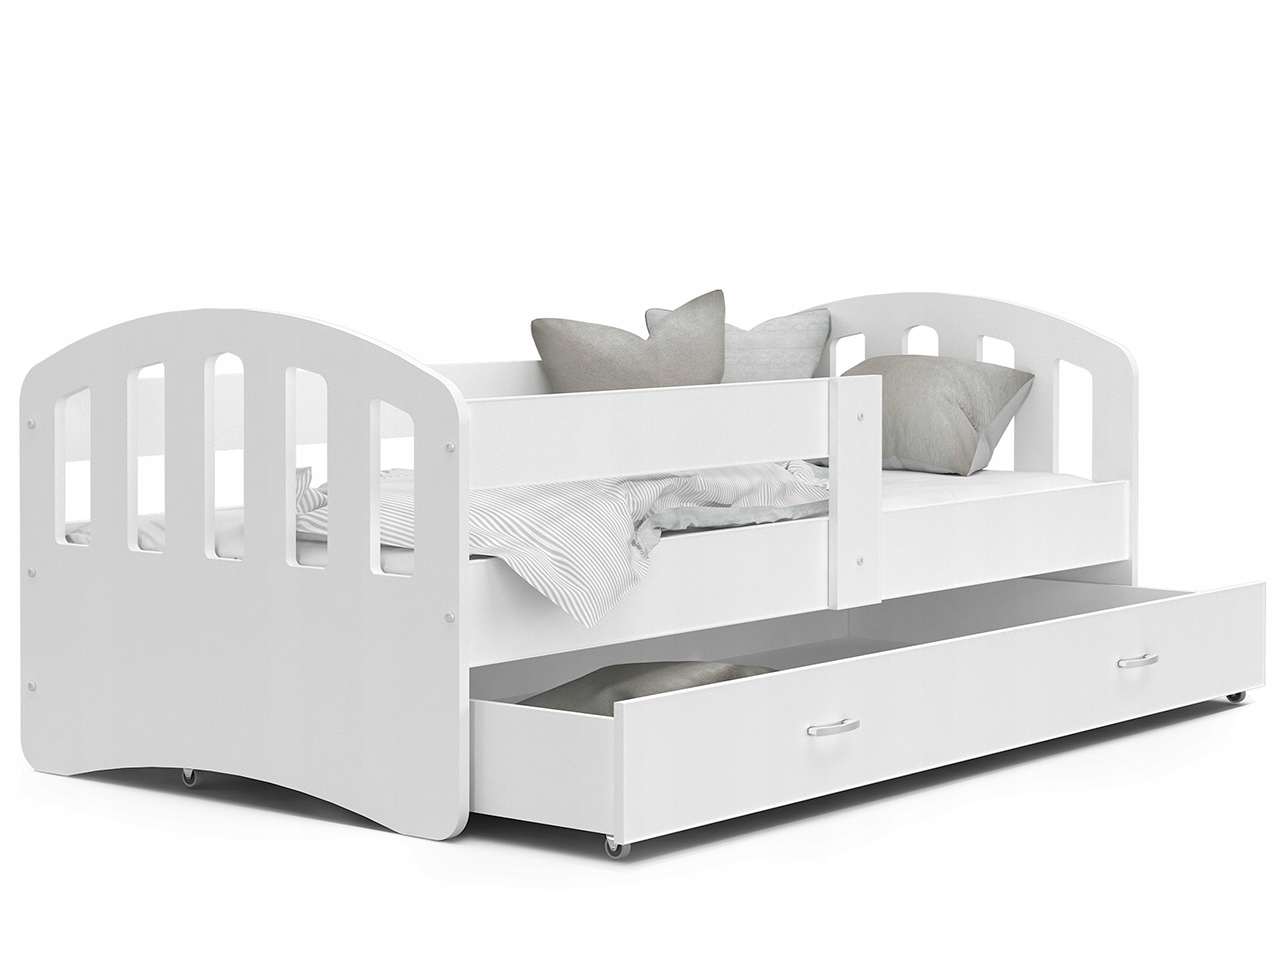 Otroške postelje - Otroška postelja Happy Premium + GRATIS LEŽIŠČE IZ PENE  - 80x160- MODRA BARVA / 208